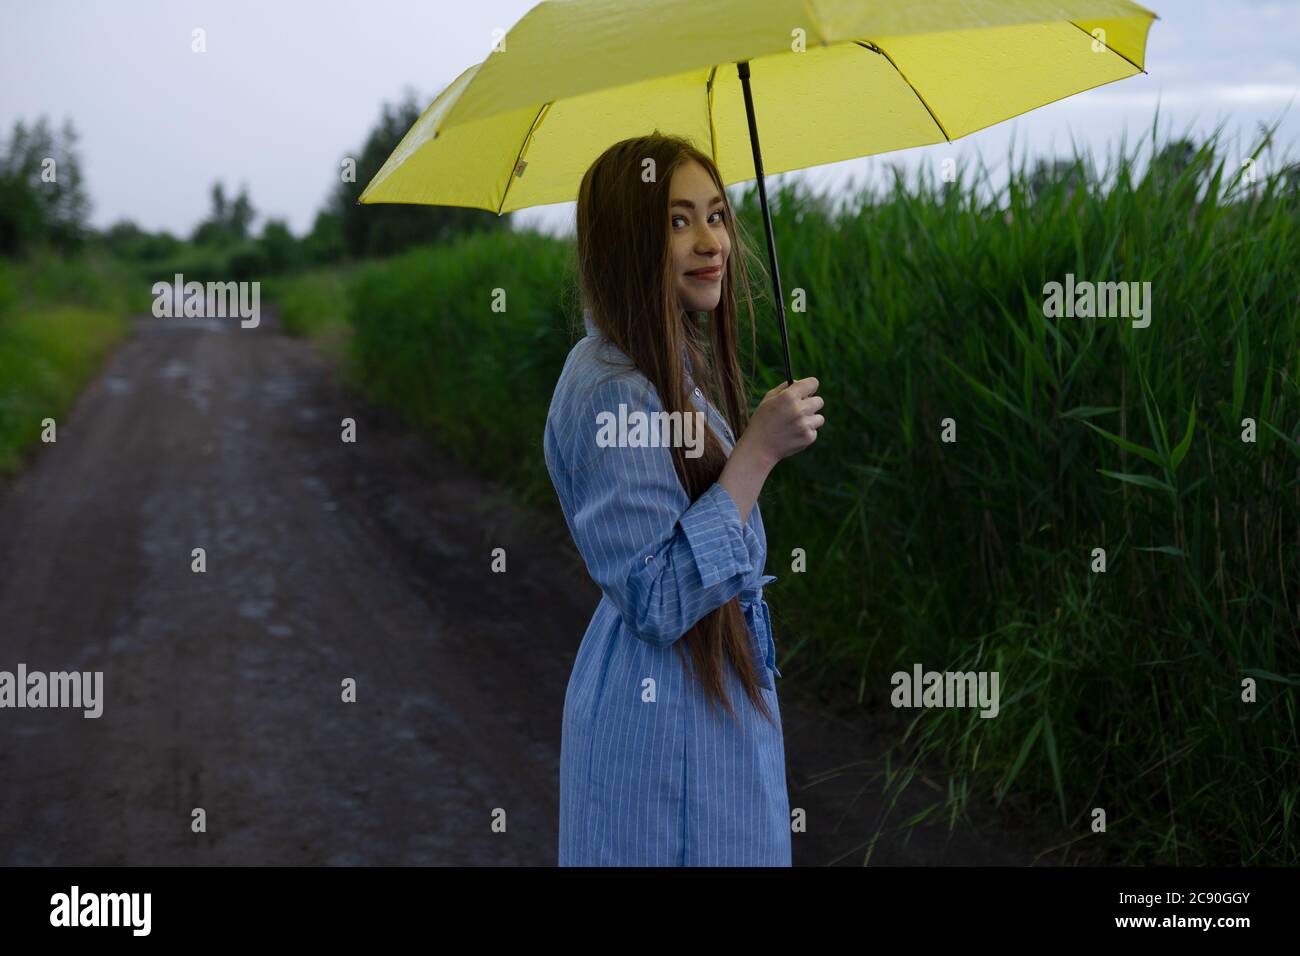 Russland, Omsk, Porträt einer jungen Frau mit Regenschirm auf Feldweg Stockfoto